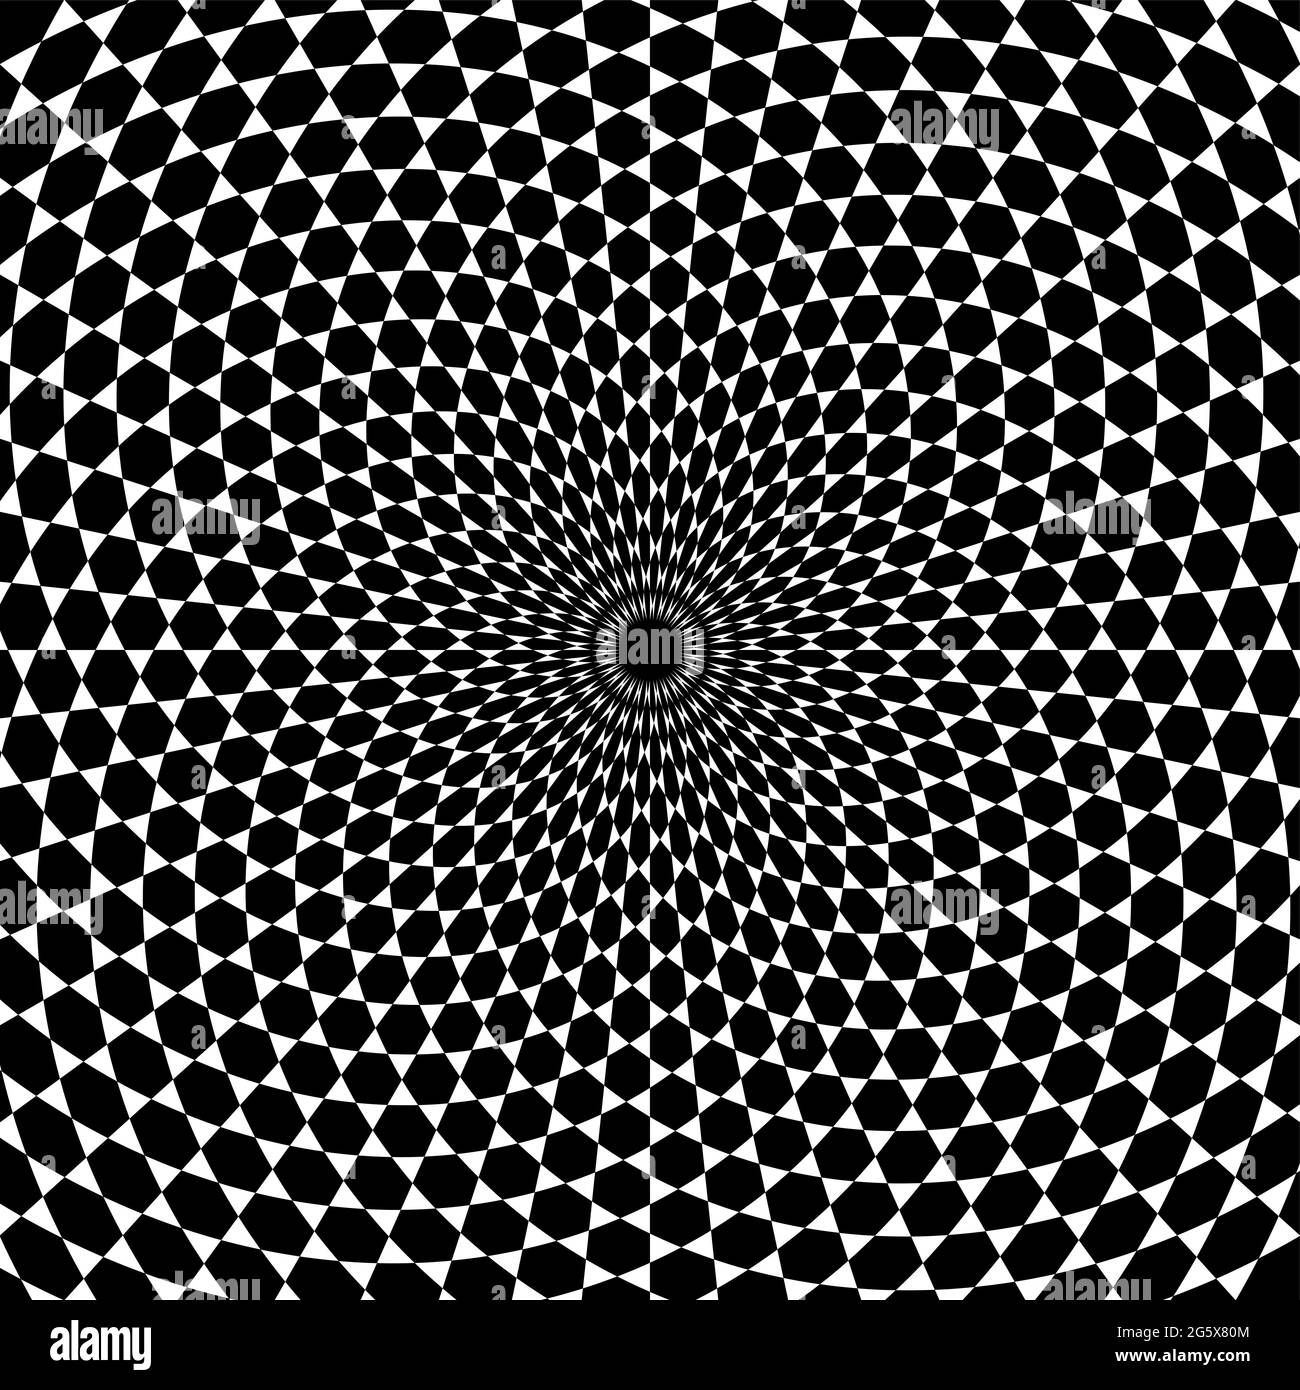 Arrière-plan en spirale à motif hexagonal. Hexagones noirs entourés de triangles blancs, développés en spirale du centre vers l'extérieur. Carrelage trihexagonal. Banque D'Images